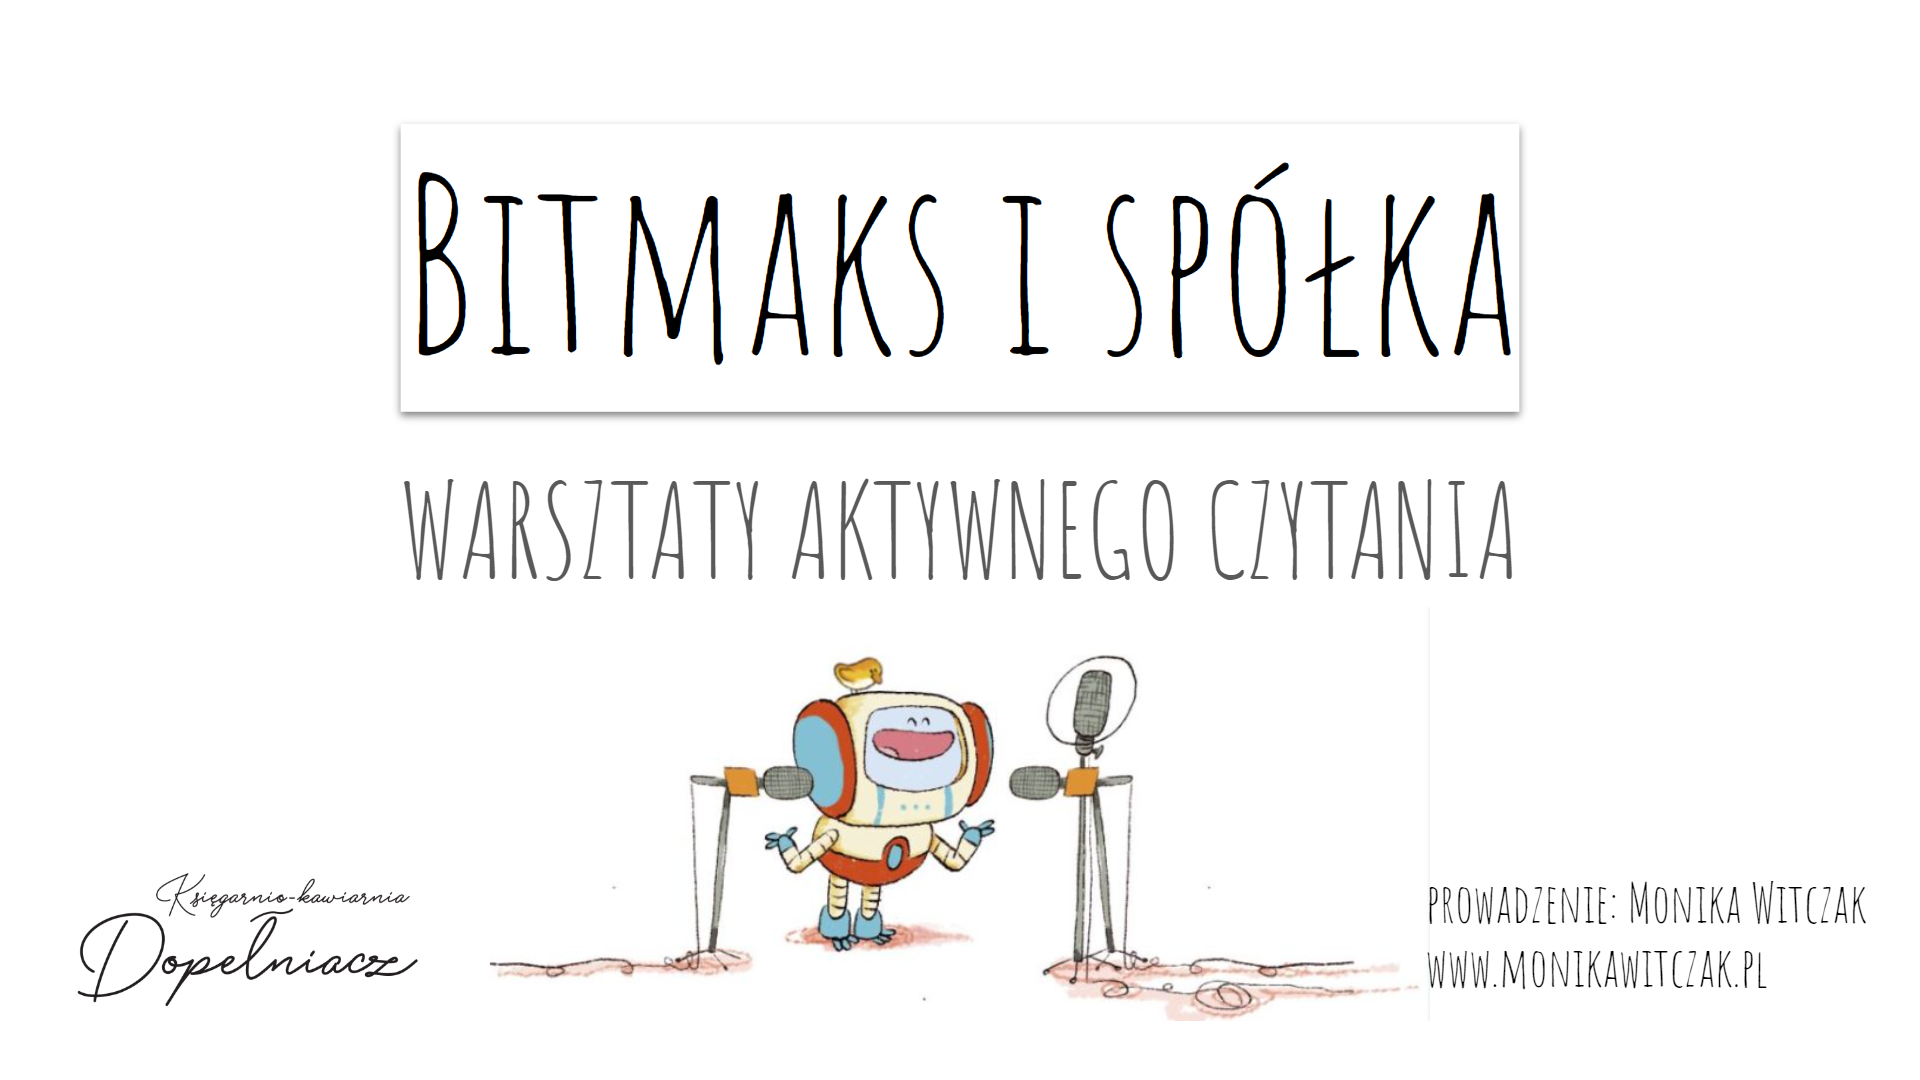 Warsztaty aktywnego czytania z komiksem „Bitmaks i spółka”